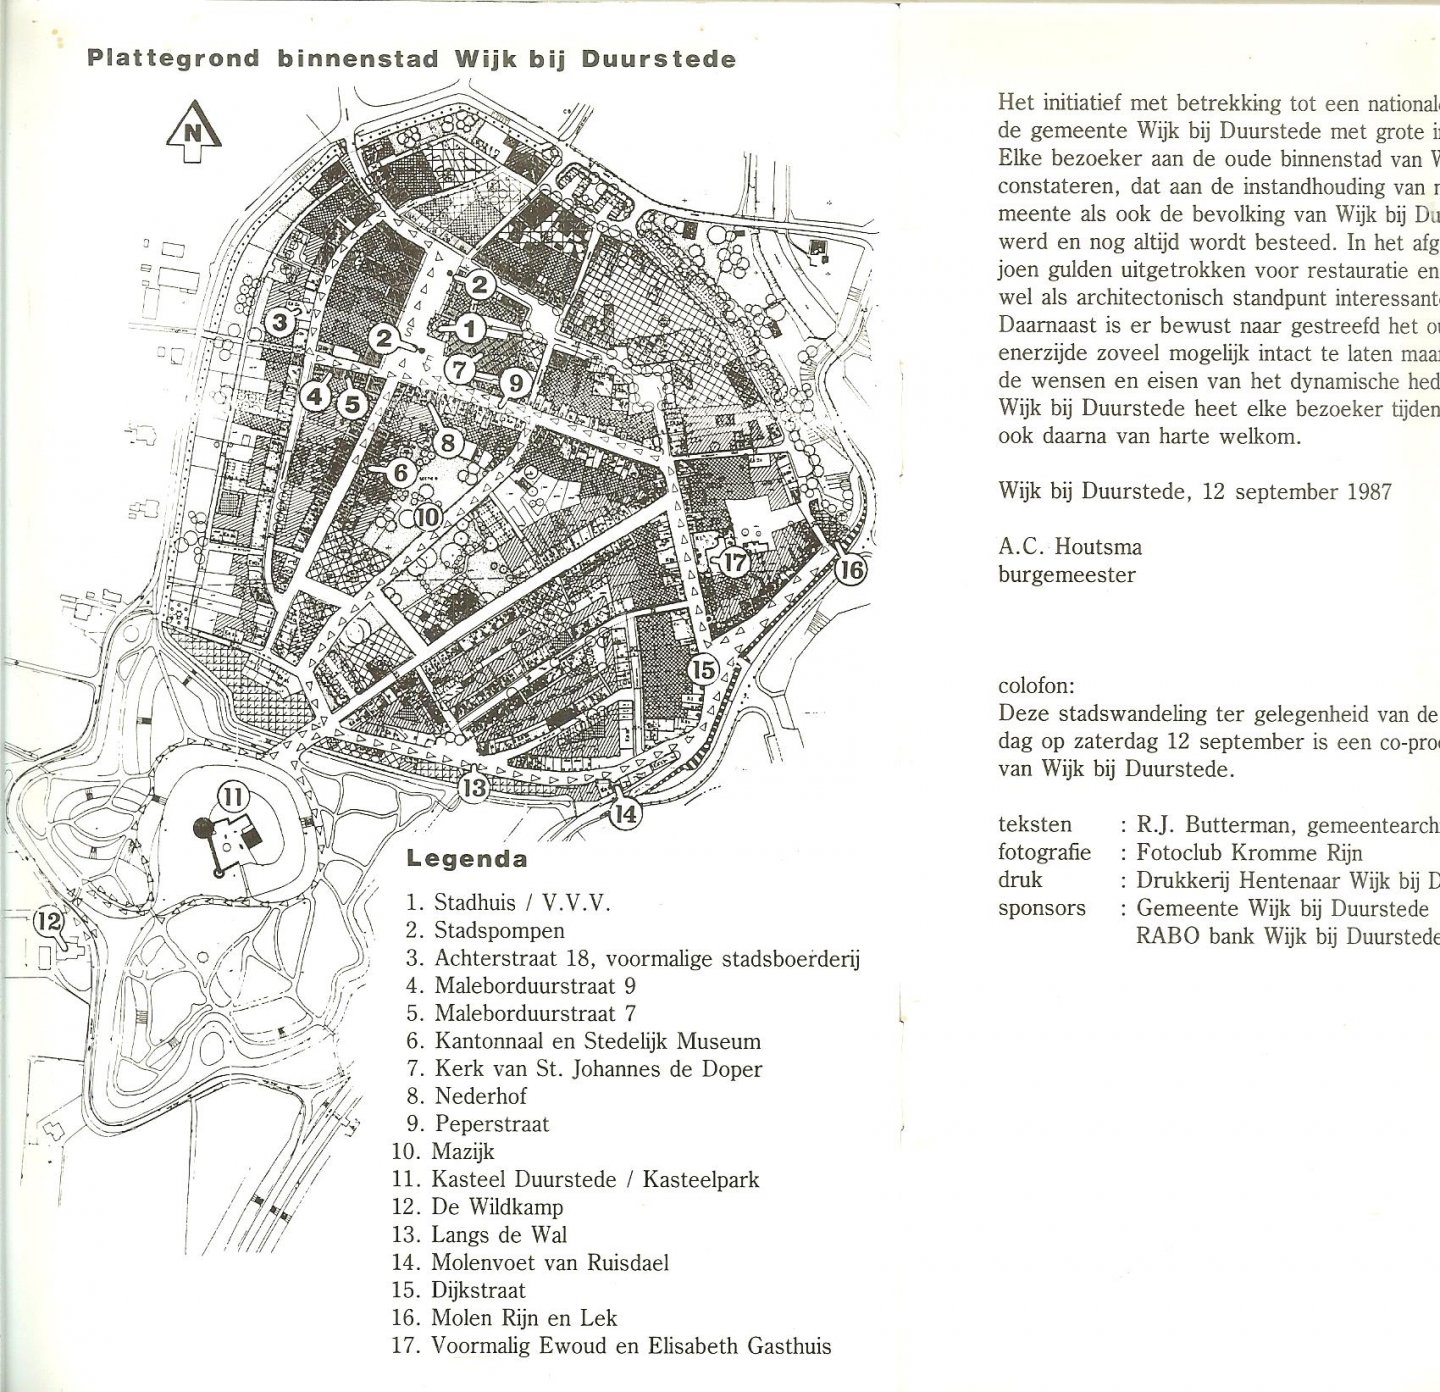 Butterman R.J  .. Voorwoord  A.C. Houtsma  Burgemeester - Wijk bij Duurstede, monumenten wandeling, met foto's